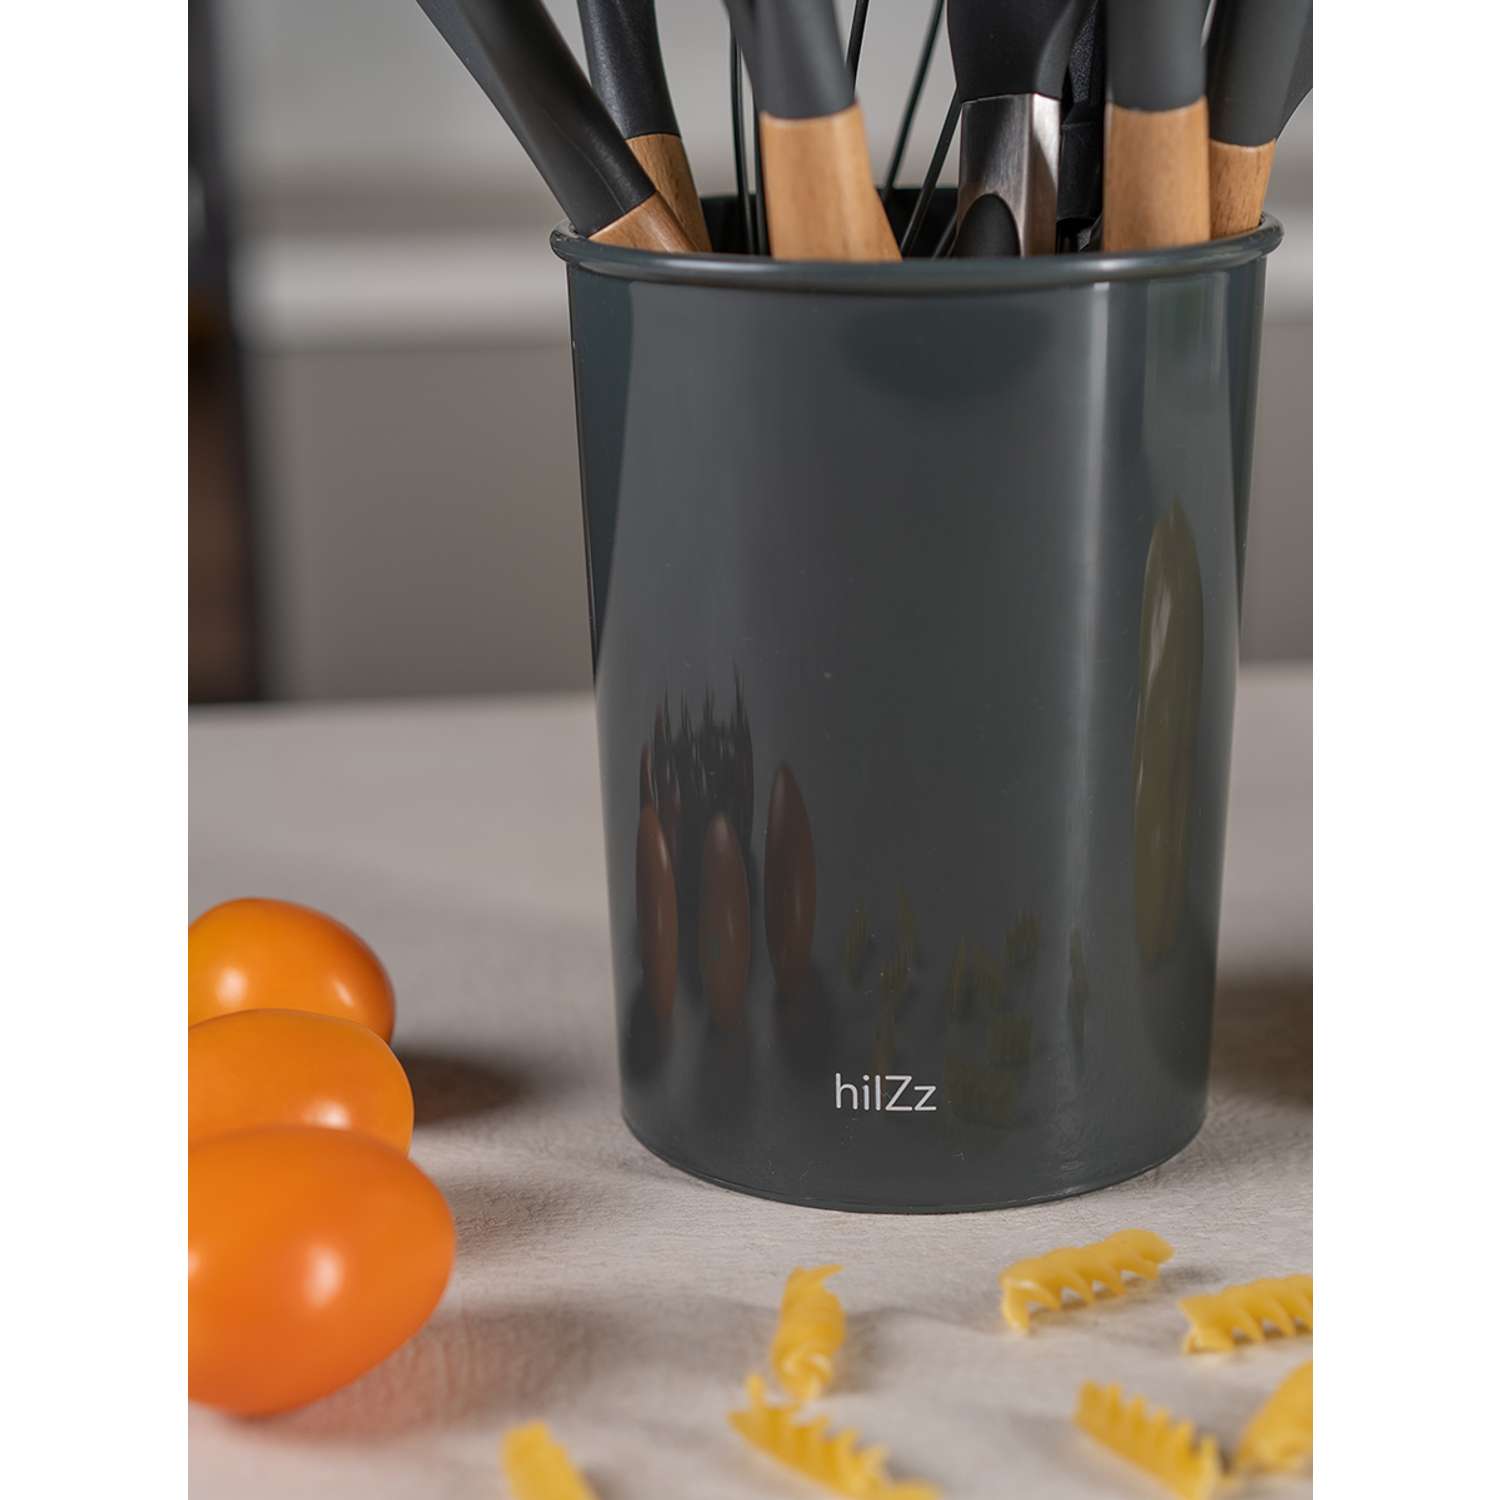 Набор кухонных принадлежностей HILZZ 12 предметов серый - фото 5